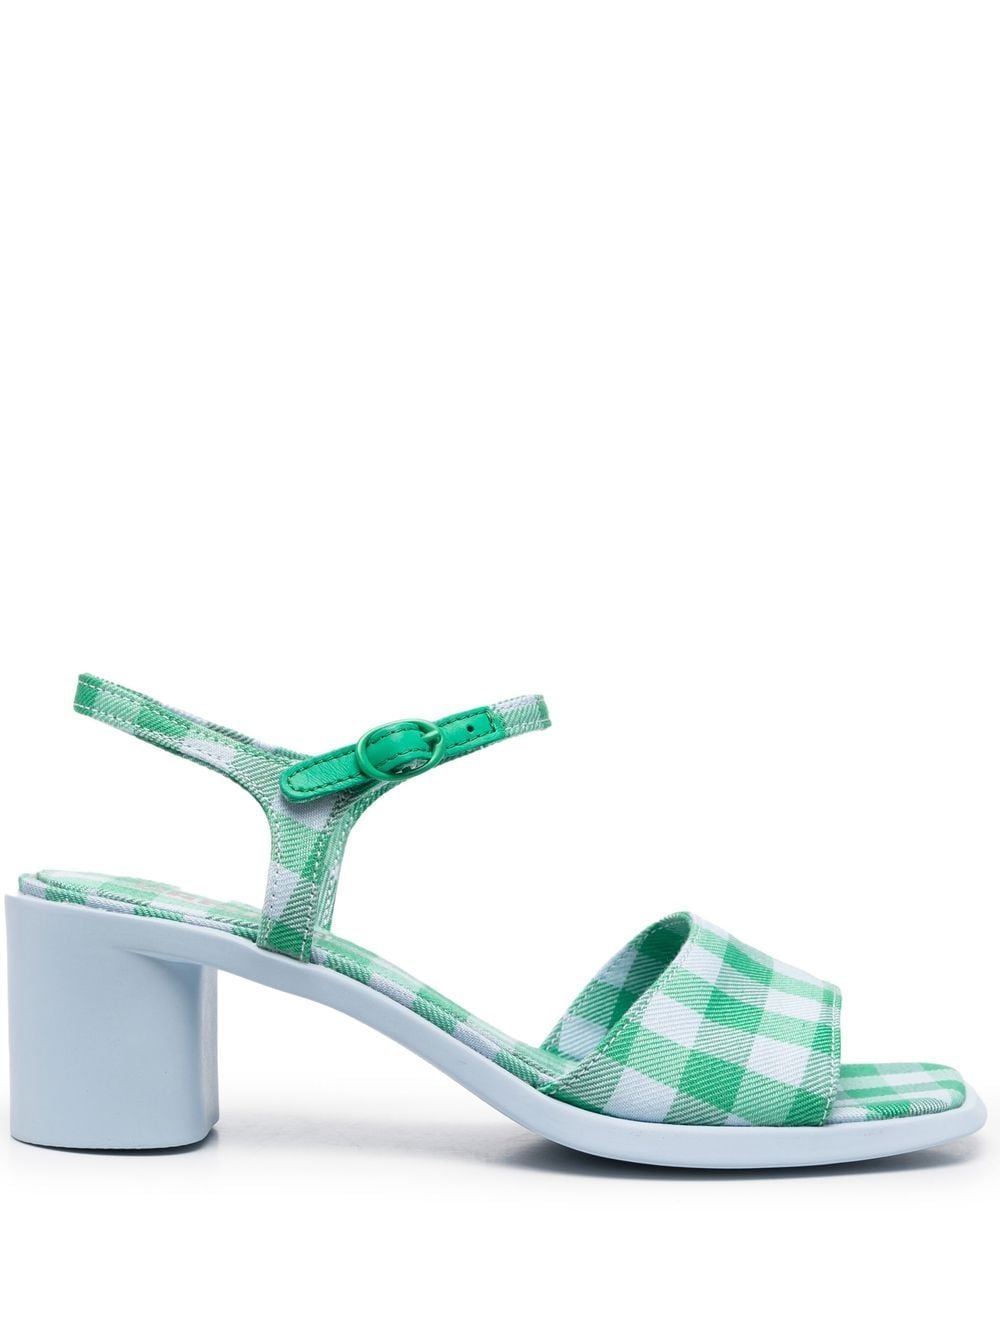 Camper Meda Gingham Sandals In Green | ModeSens